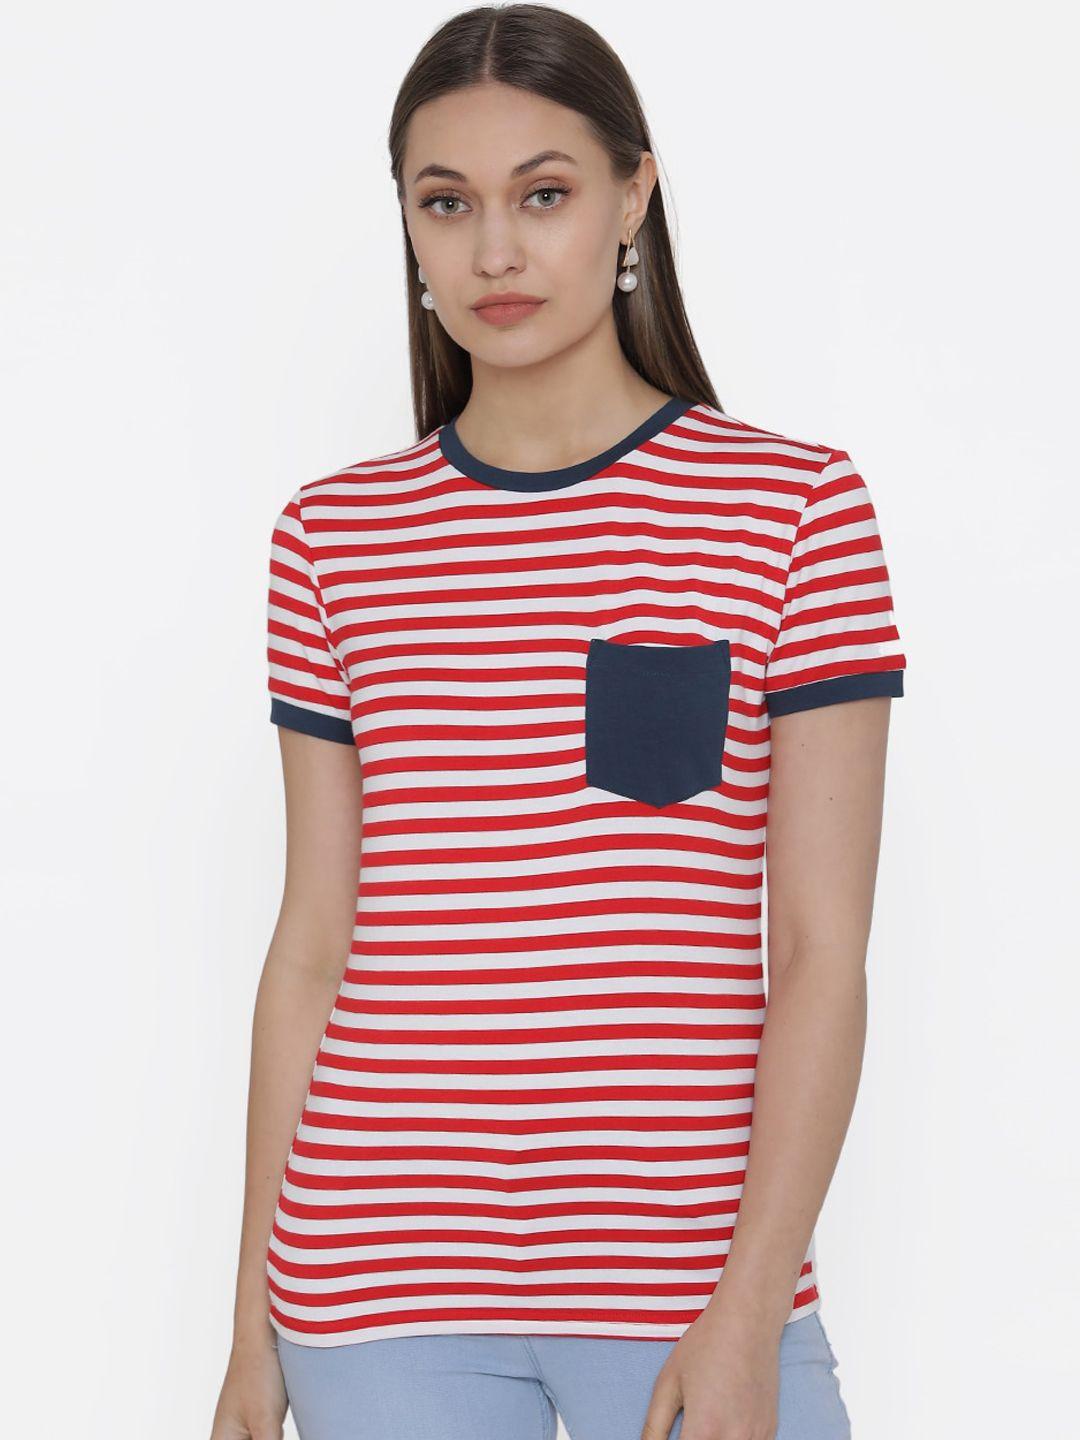 door74 women red & white striped round neck t-shirt